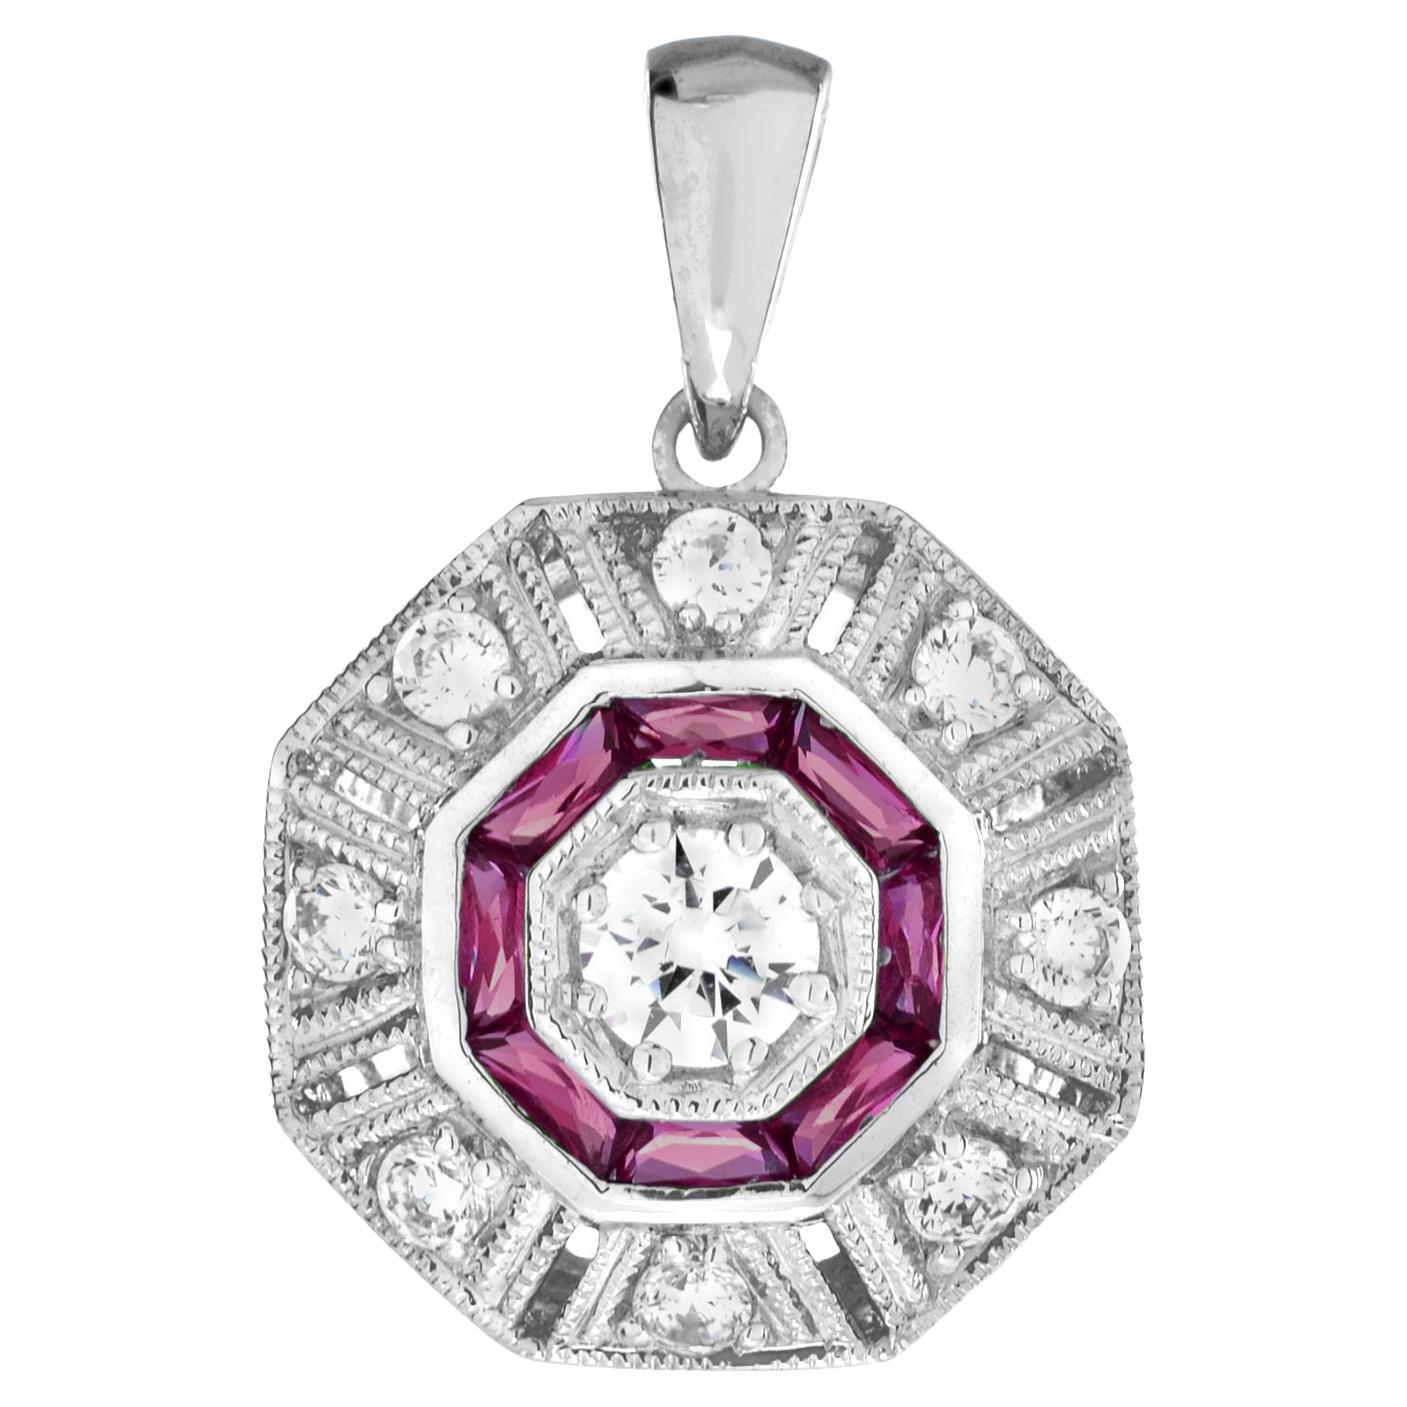 Pendentif cible octogonal de style Art déco en or blanc 18 carats avec diamants et rubis